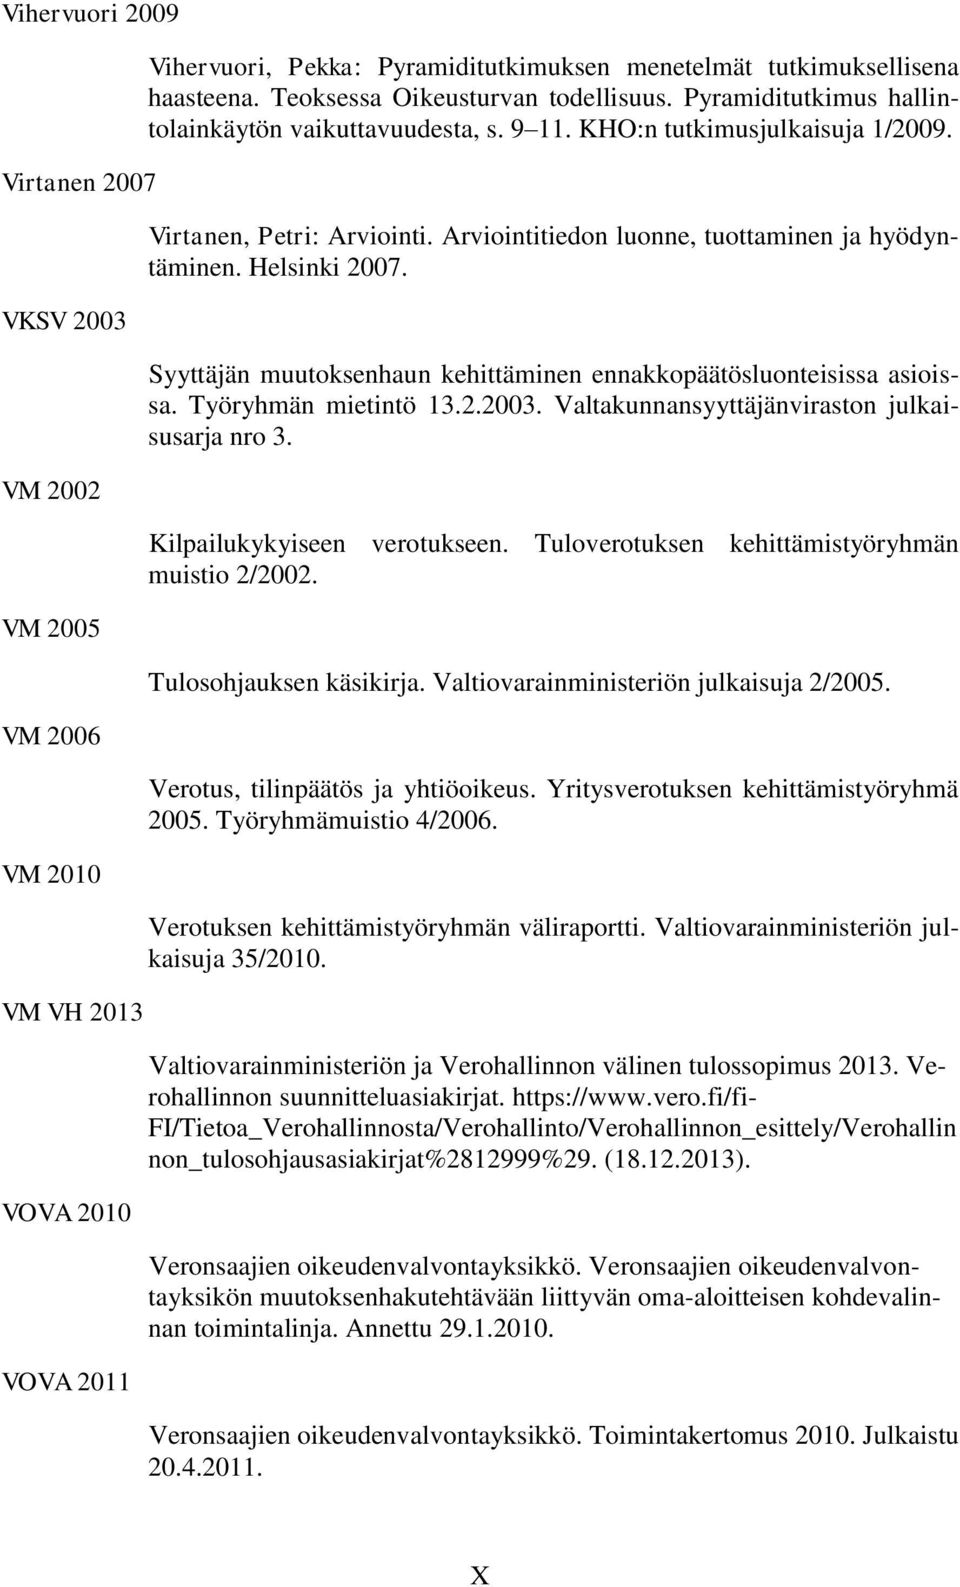 Arviointitiedon luonne, tuottaminen ja hyödyntäminen. Helsinki 2007. Syyttäjän muutoksenhaun kehittäminen ennakkopäätösluonteisissa asioissa. Työryhmän mietintö 13.2.2003.